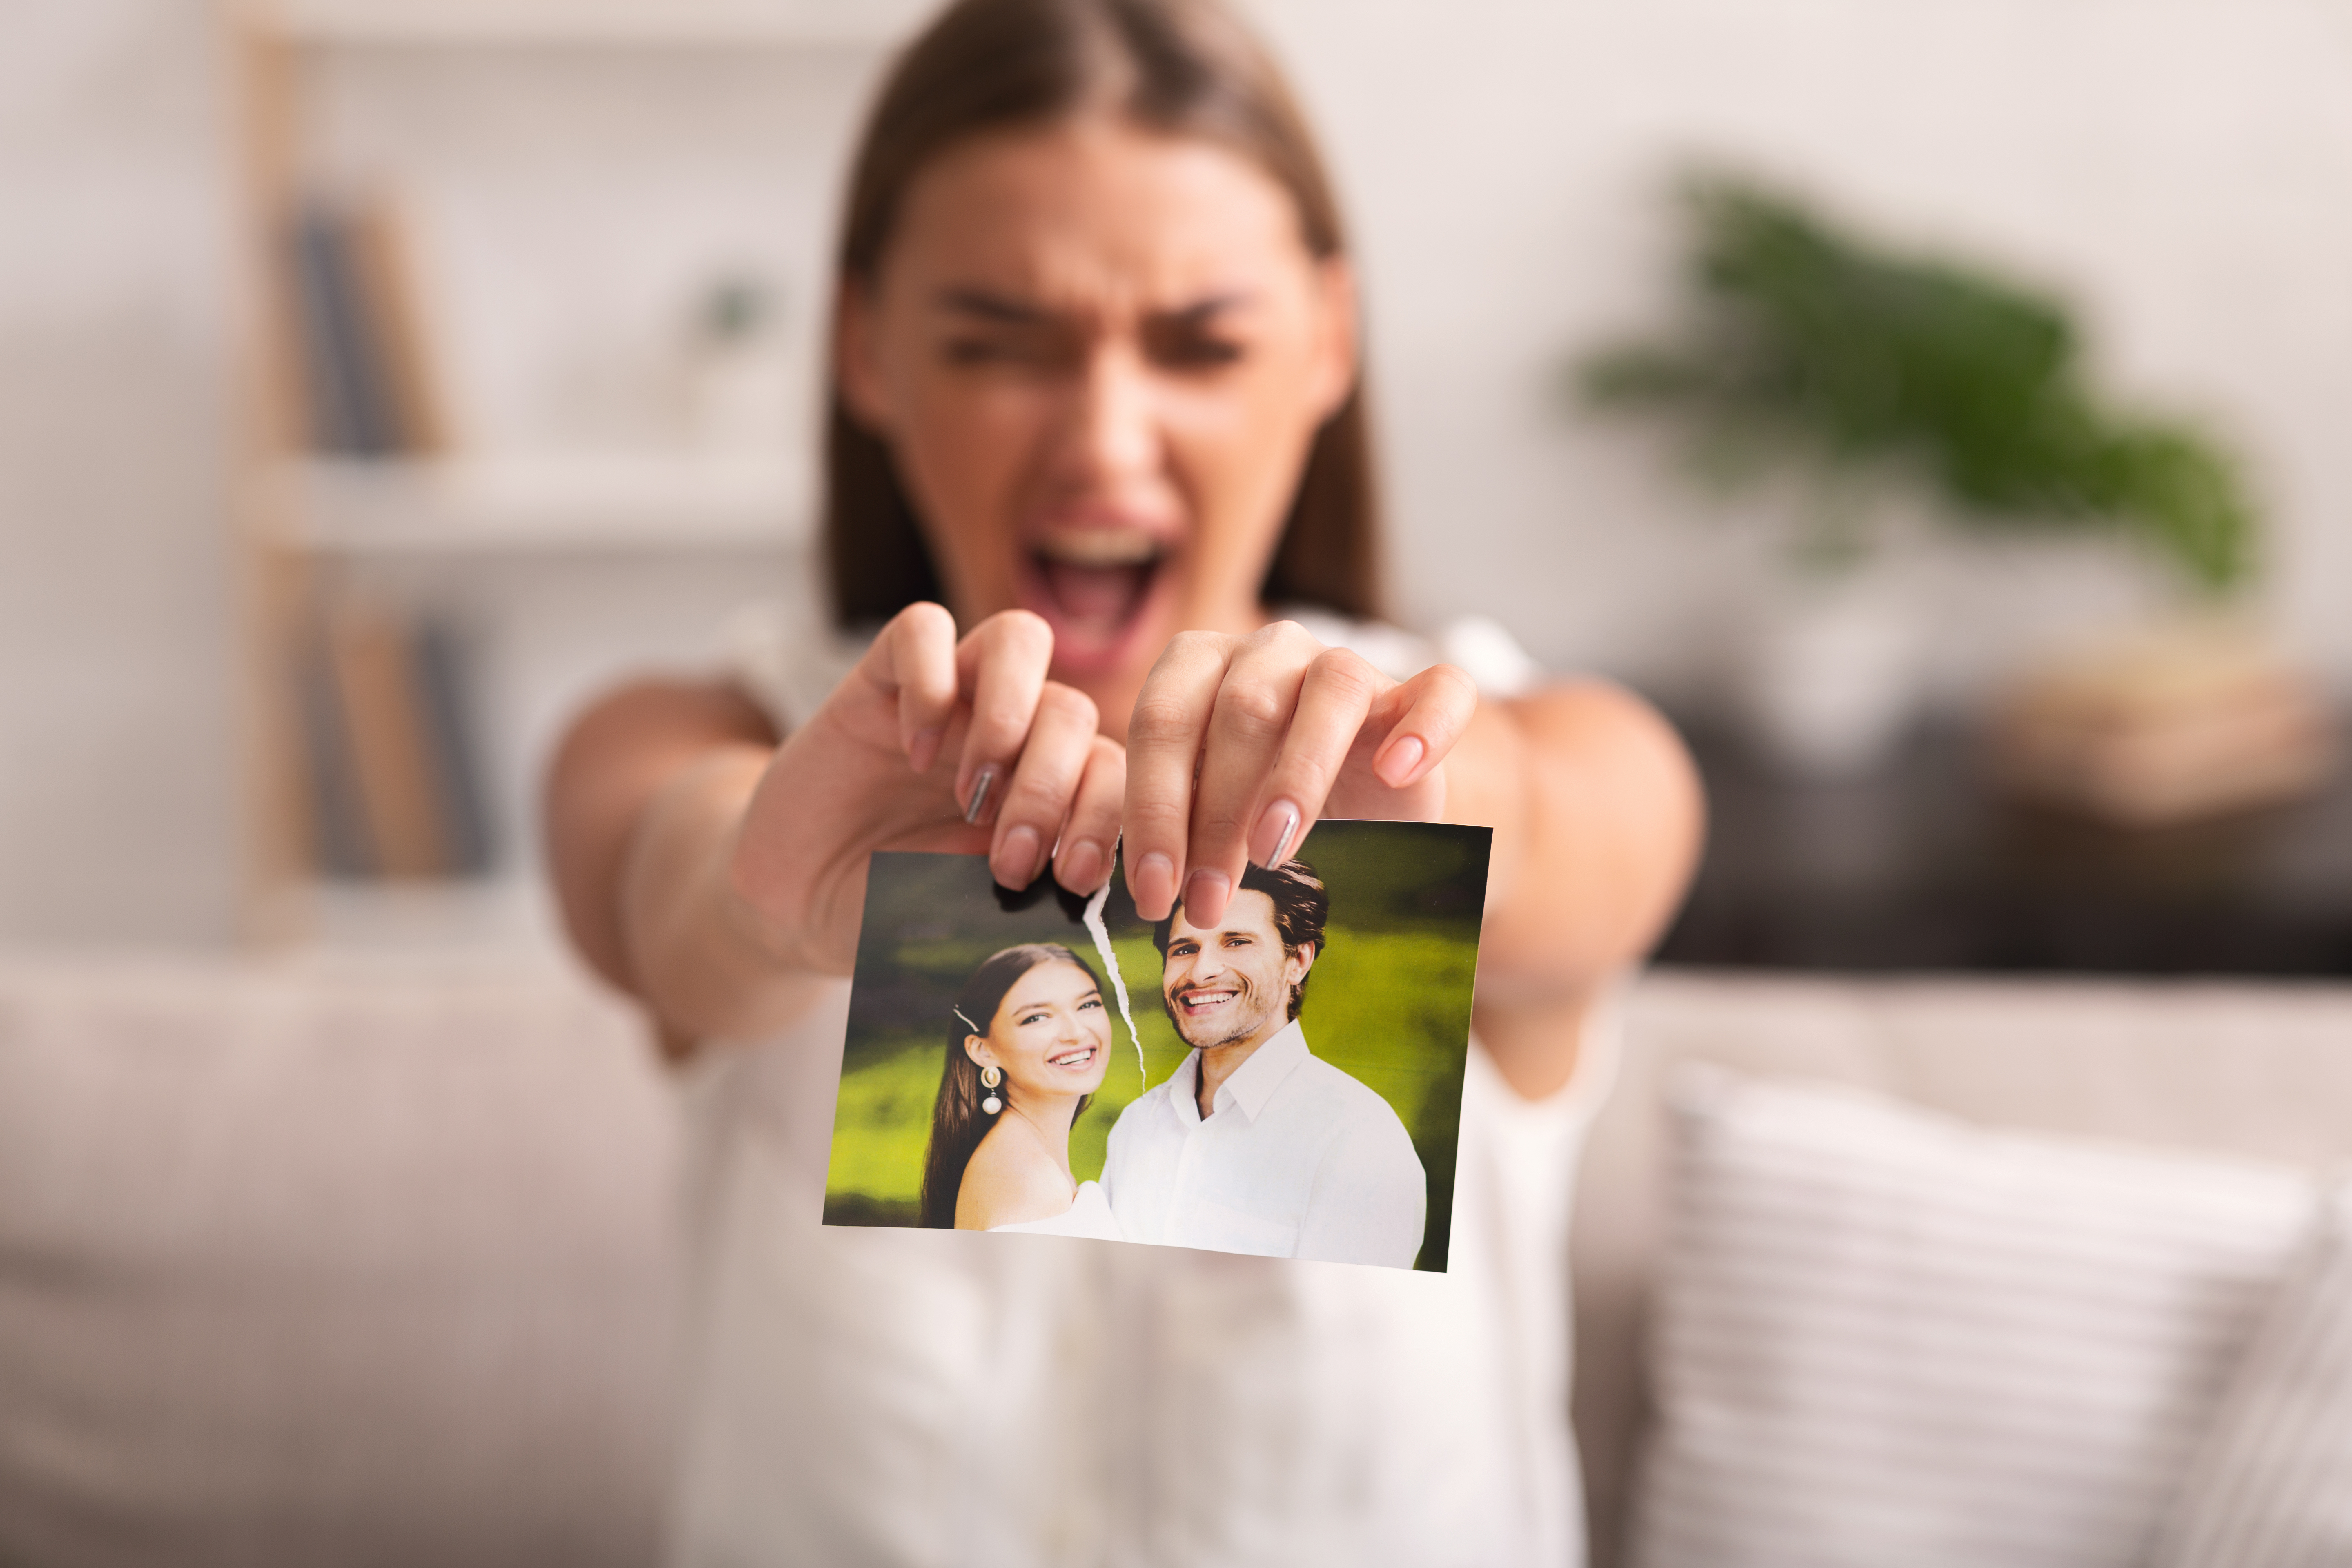 Eine Frau zerreißt ein Foto von sich und einem Mann | Quelle: Shutterstock